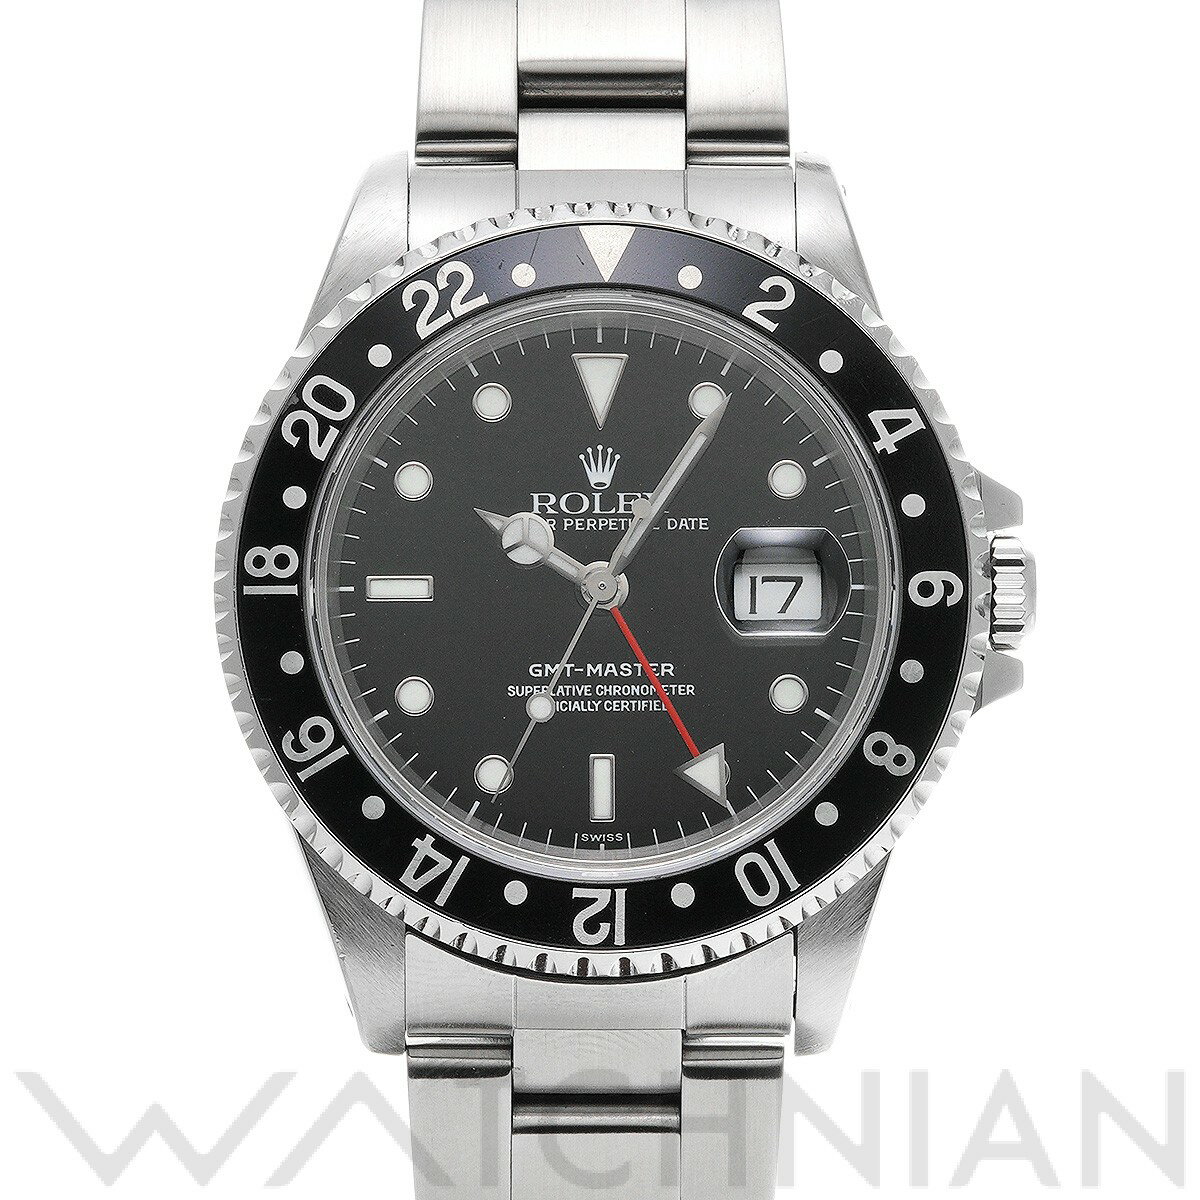 【5種選べるクーポン】【ローン60回払い無金利】【中古】 ロレックス ROLEX GMTマスター 16700 A番(1999年頃製造) ブラック メンズ 腕時計